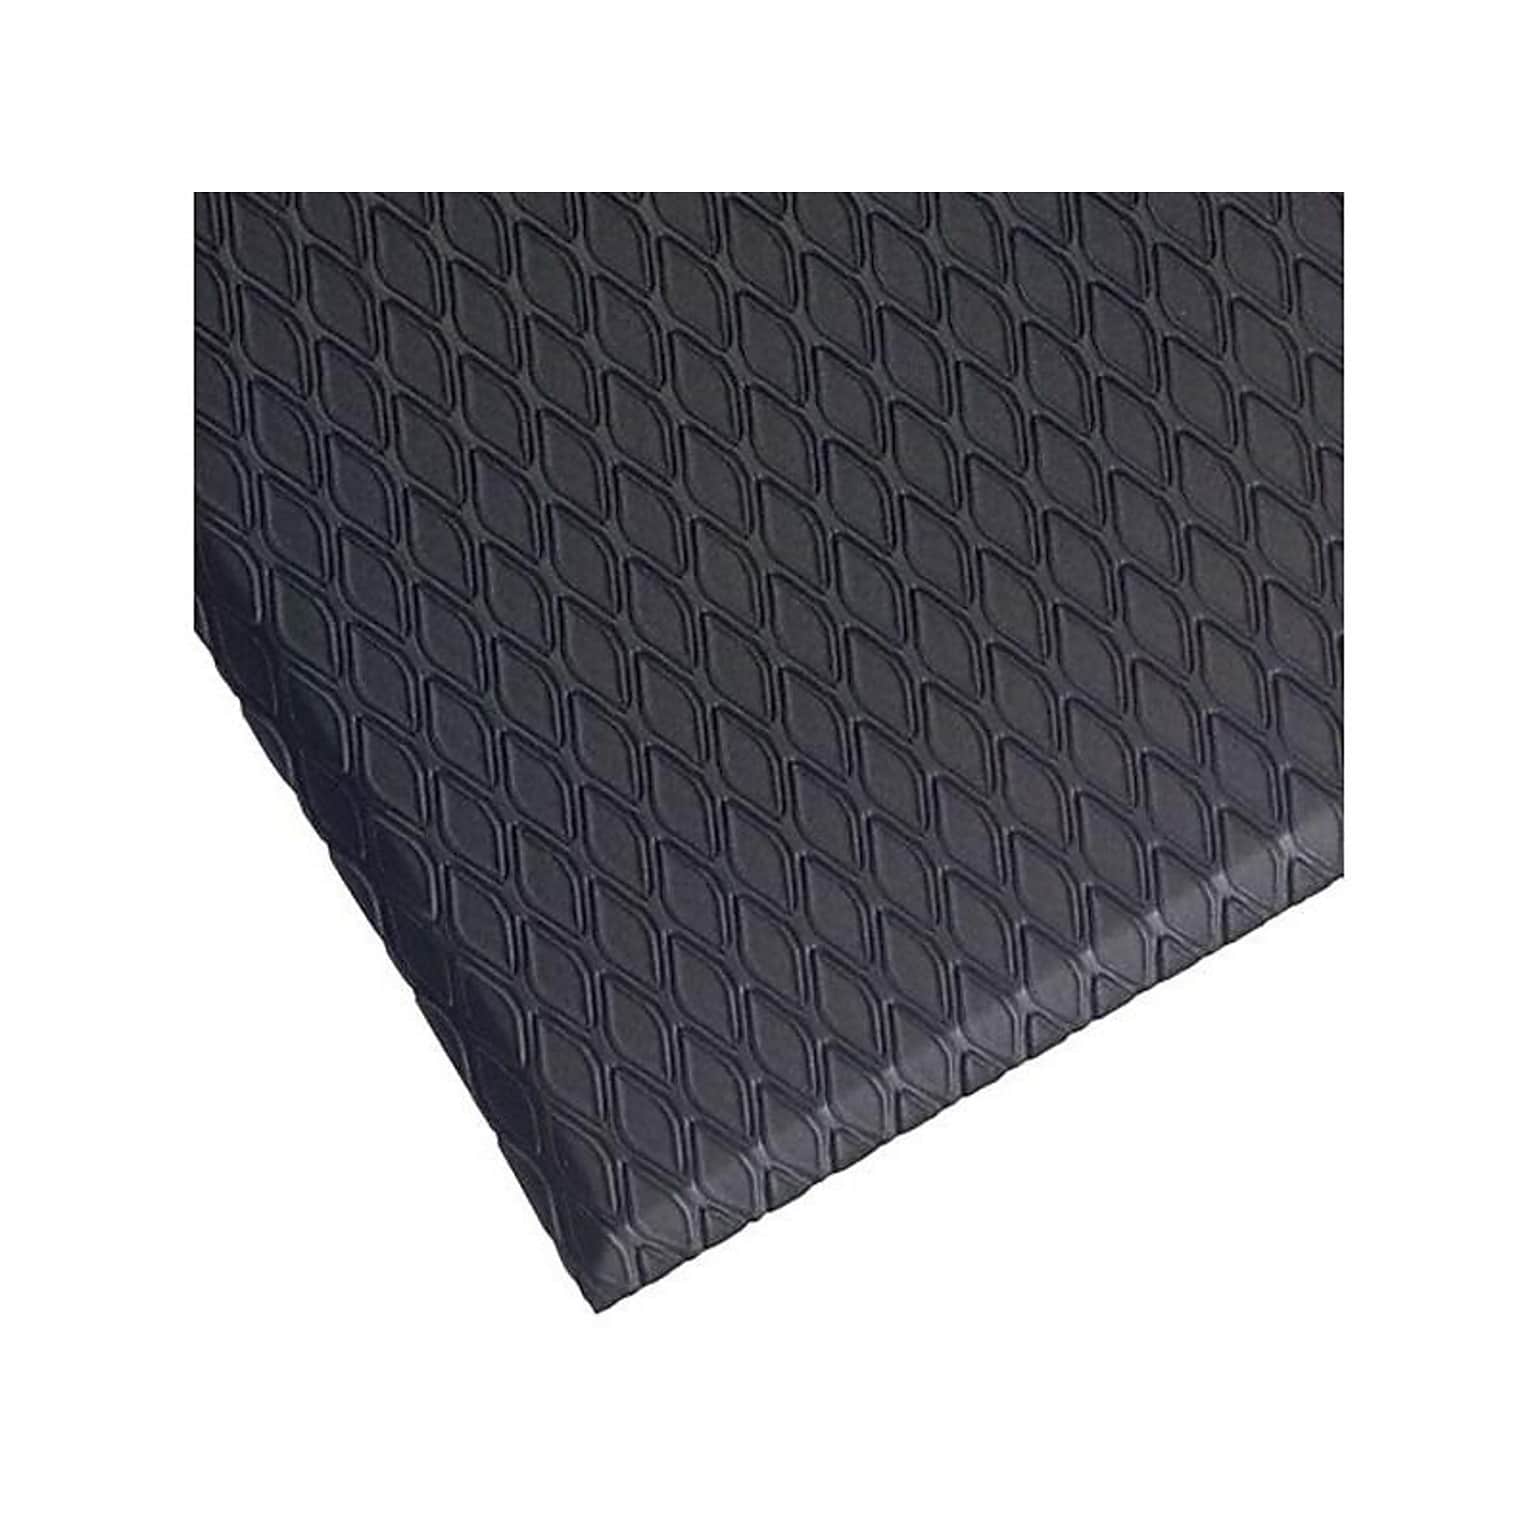 M+A Matting Cushion Max Anti-Fatigue Mat, 36 x 24, Charcoal (414000023)